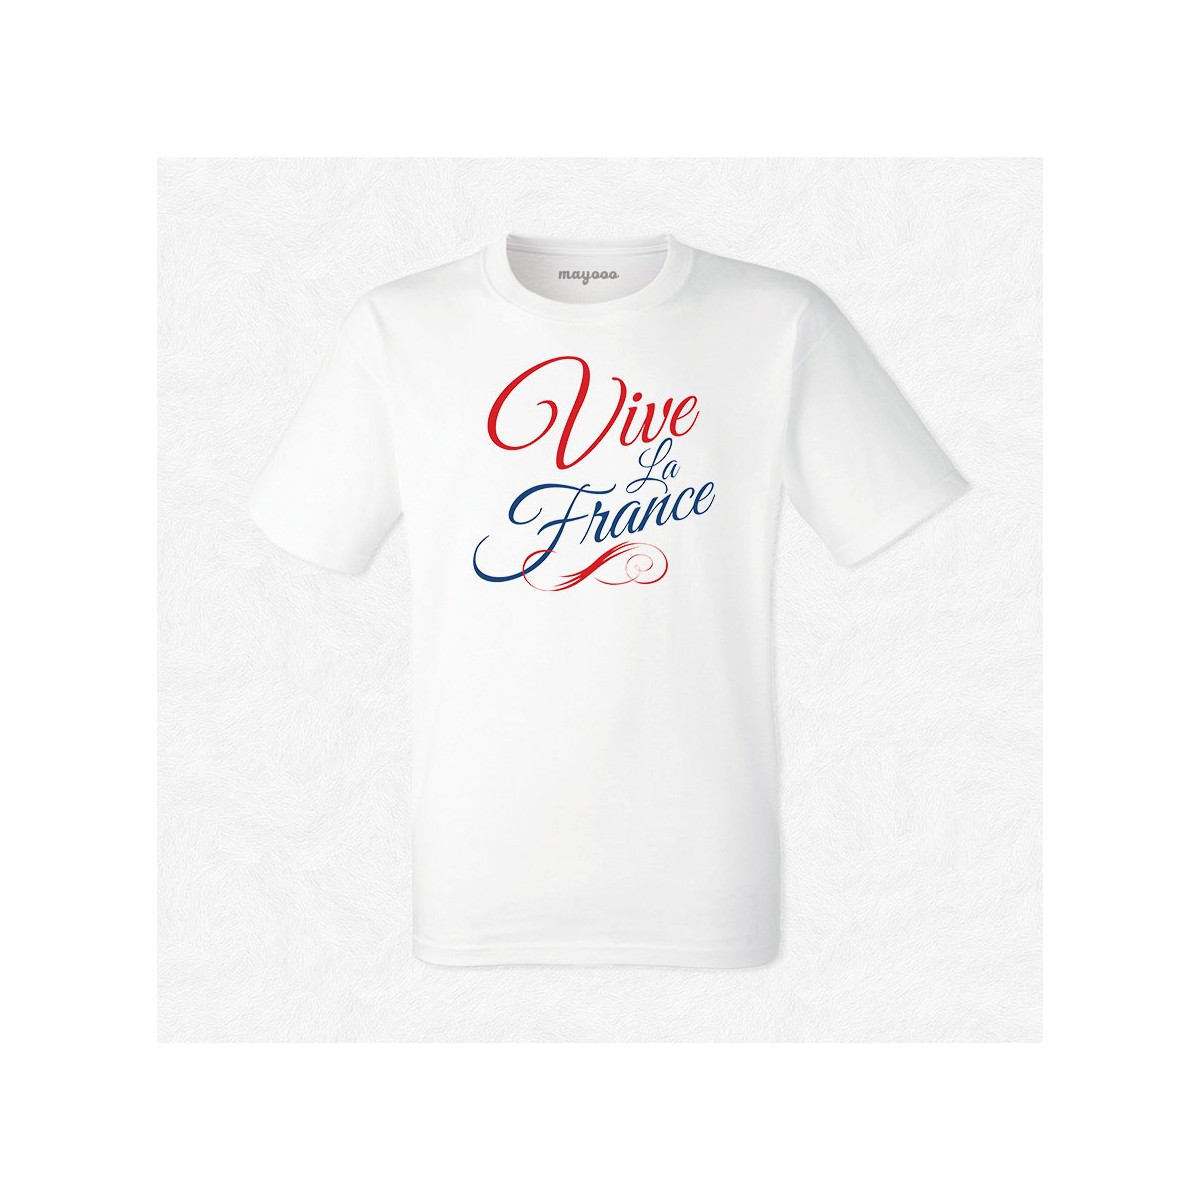 T-shirt Vive la France